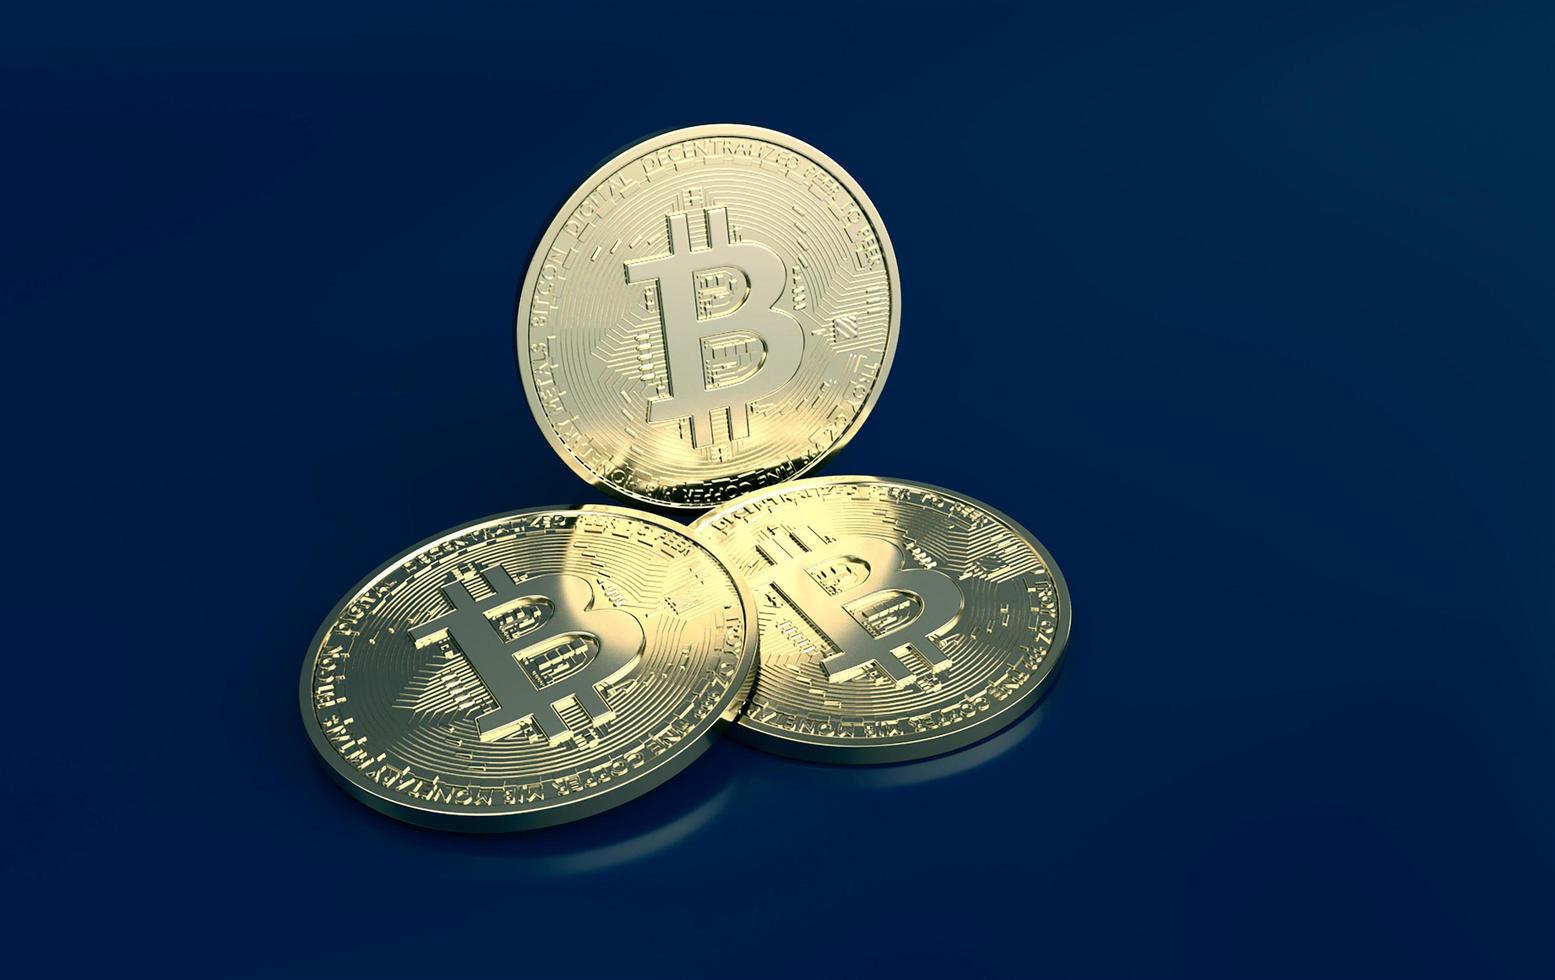 moneda digital bitcoin. cryptocurrency btc el nuevo dinero virtual cerrar 3d renderizado de bitcoins dorados sobre fondo azul oscuro foto